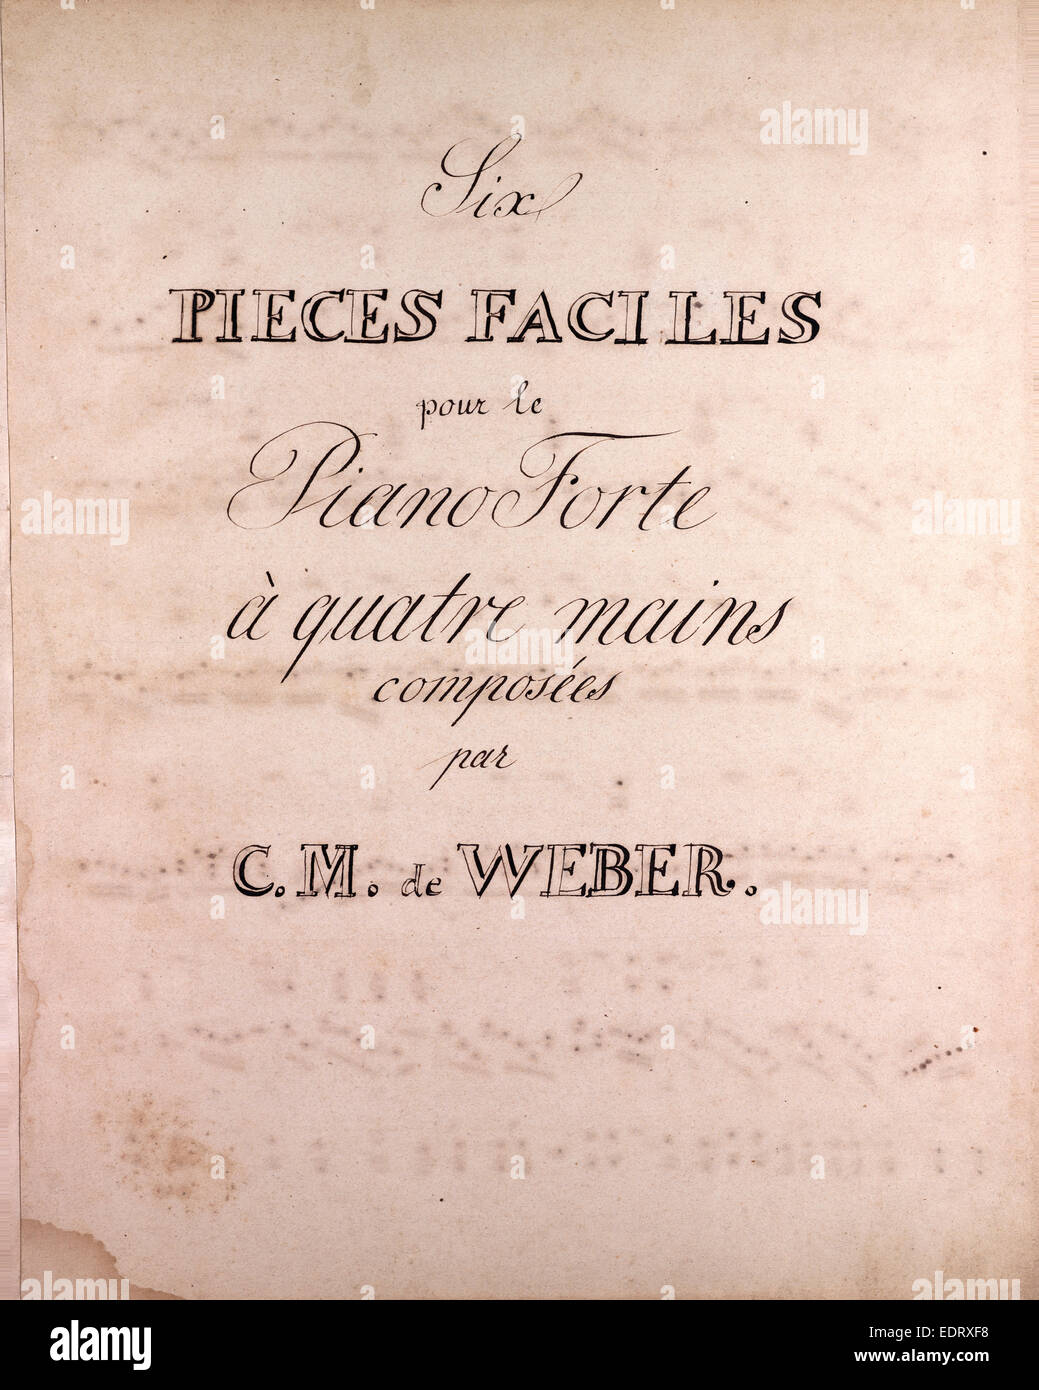 Six pieces faciles pour le Piano Forte a quatre main composed by C.M. de Weber, handwritten sheet music, music notes Stock Photo